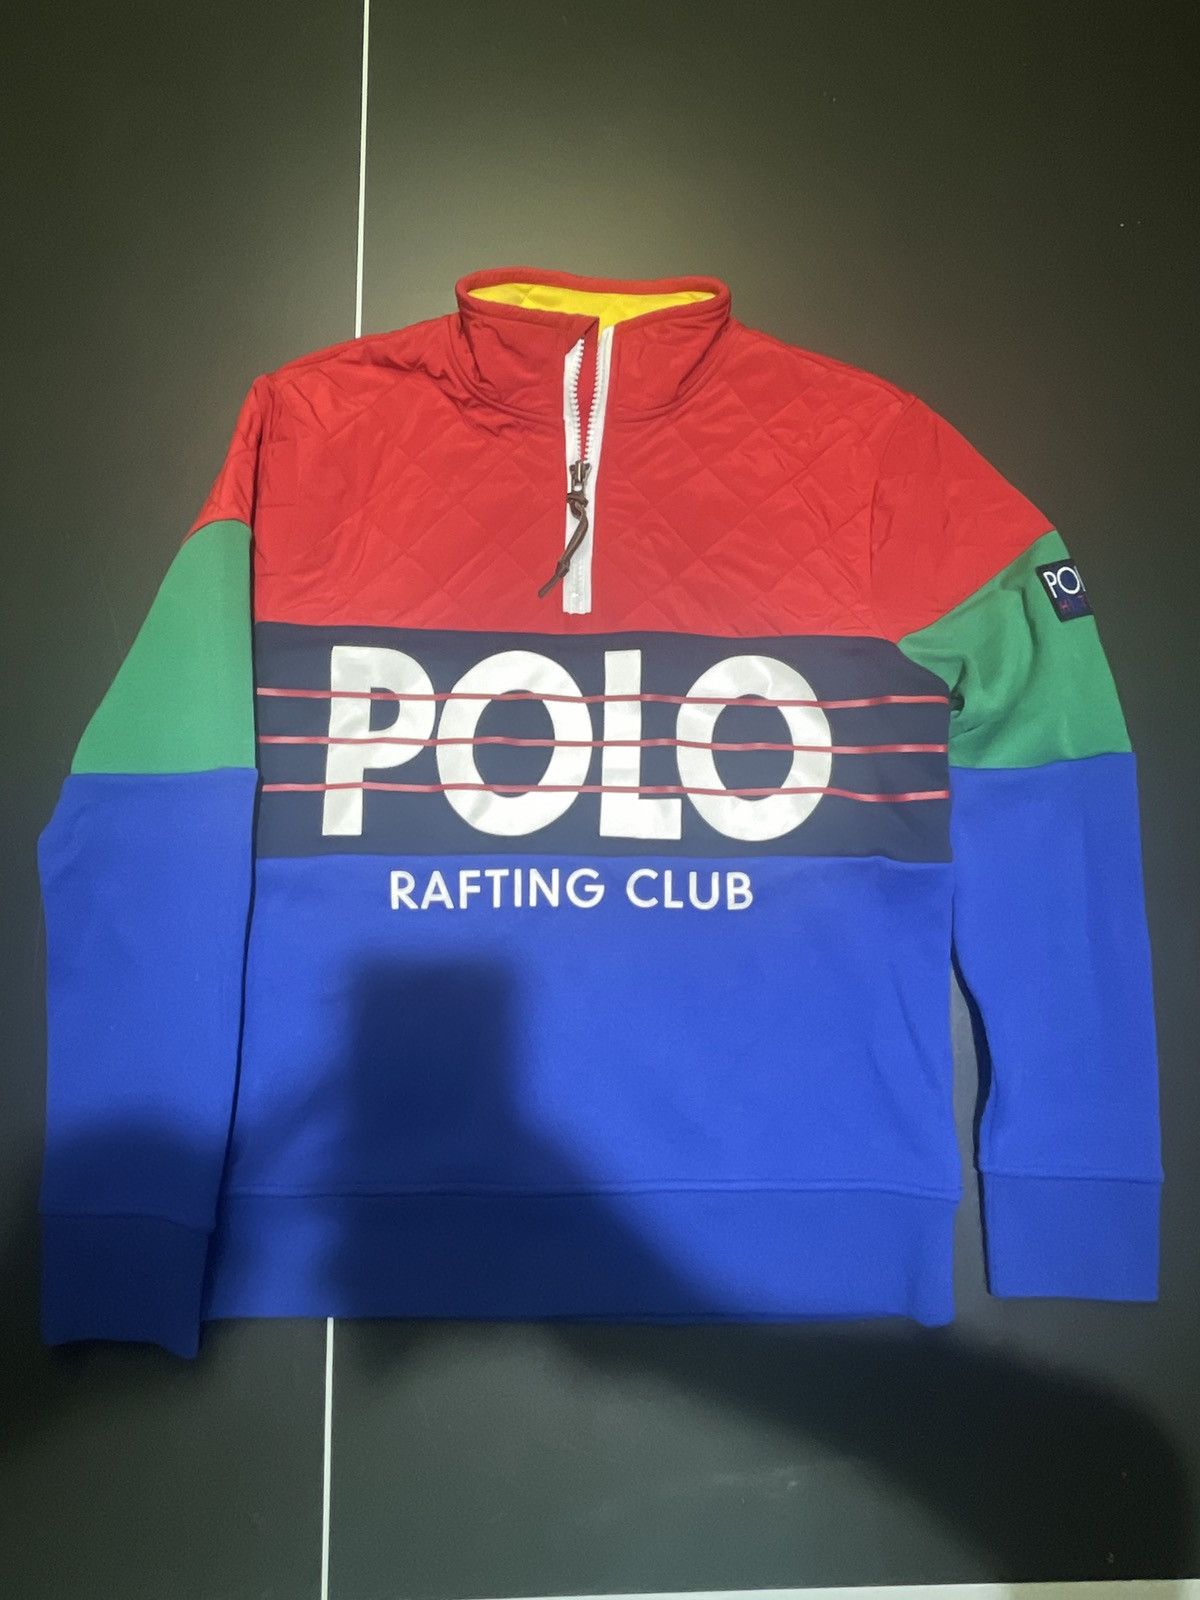 Polo Rafting Club | Grailed